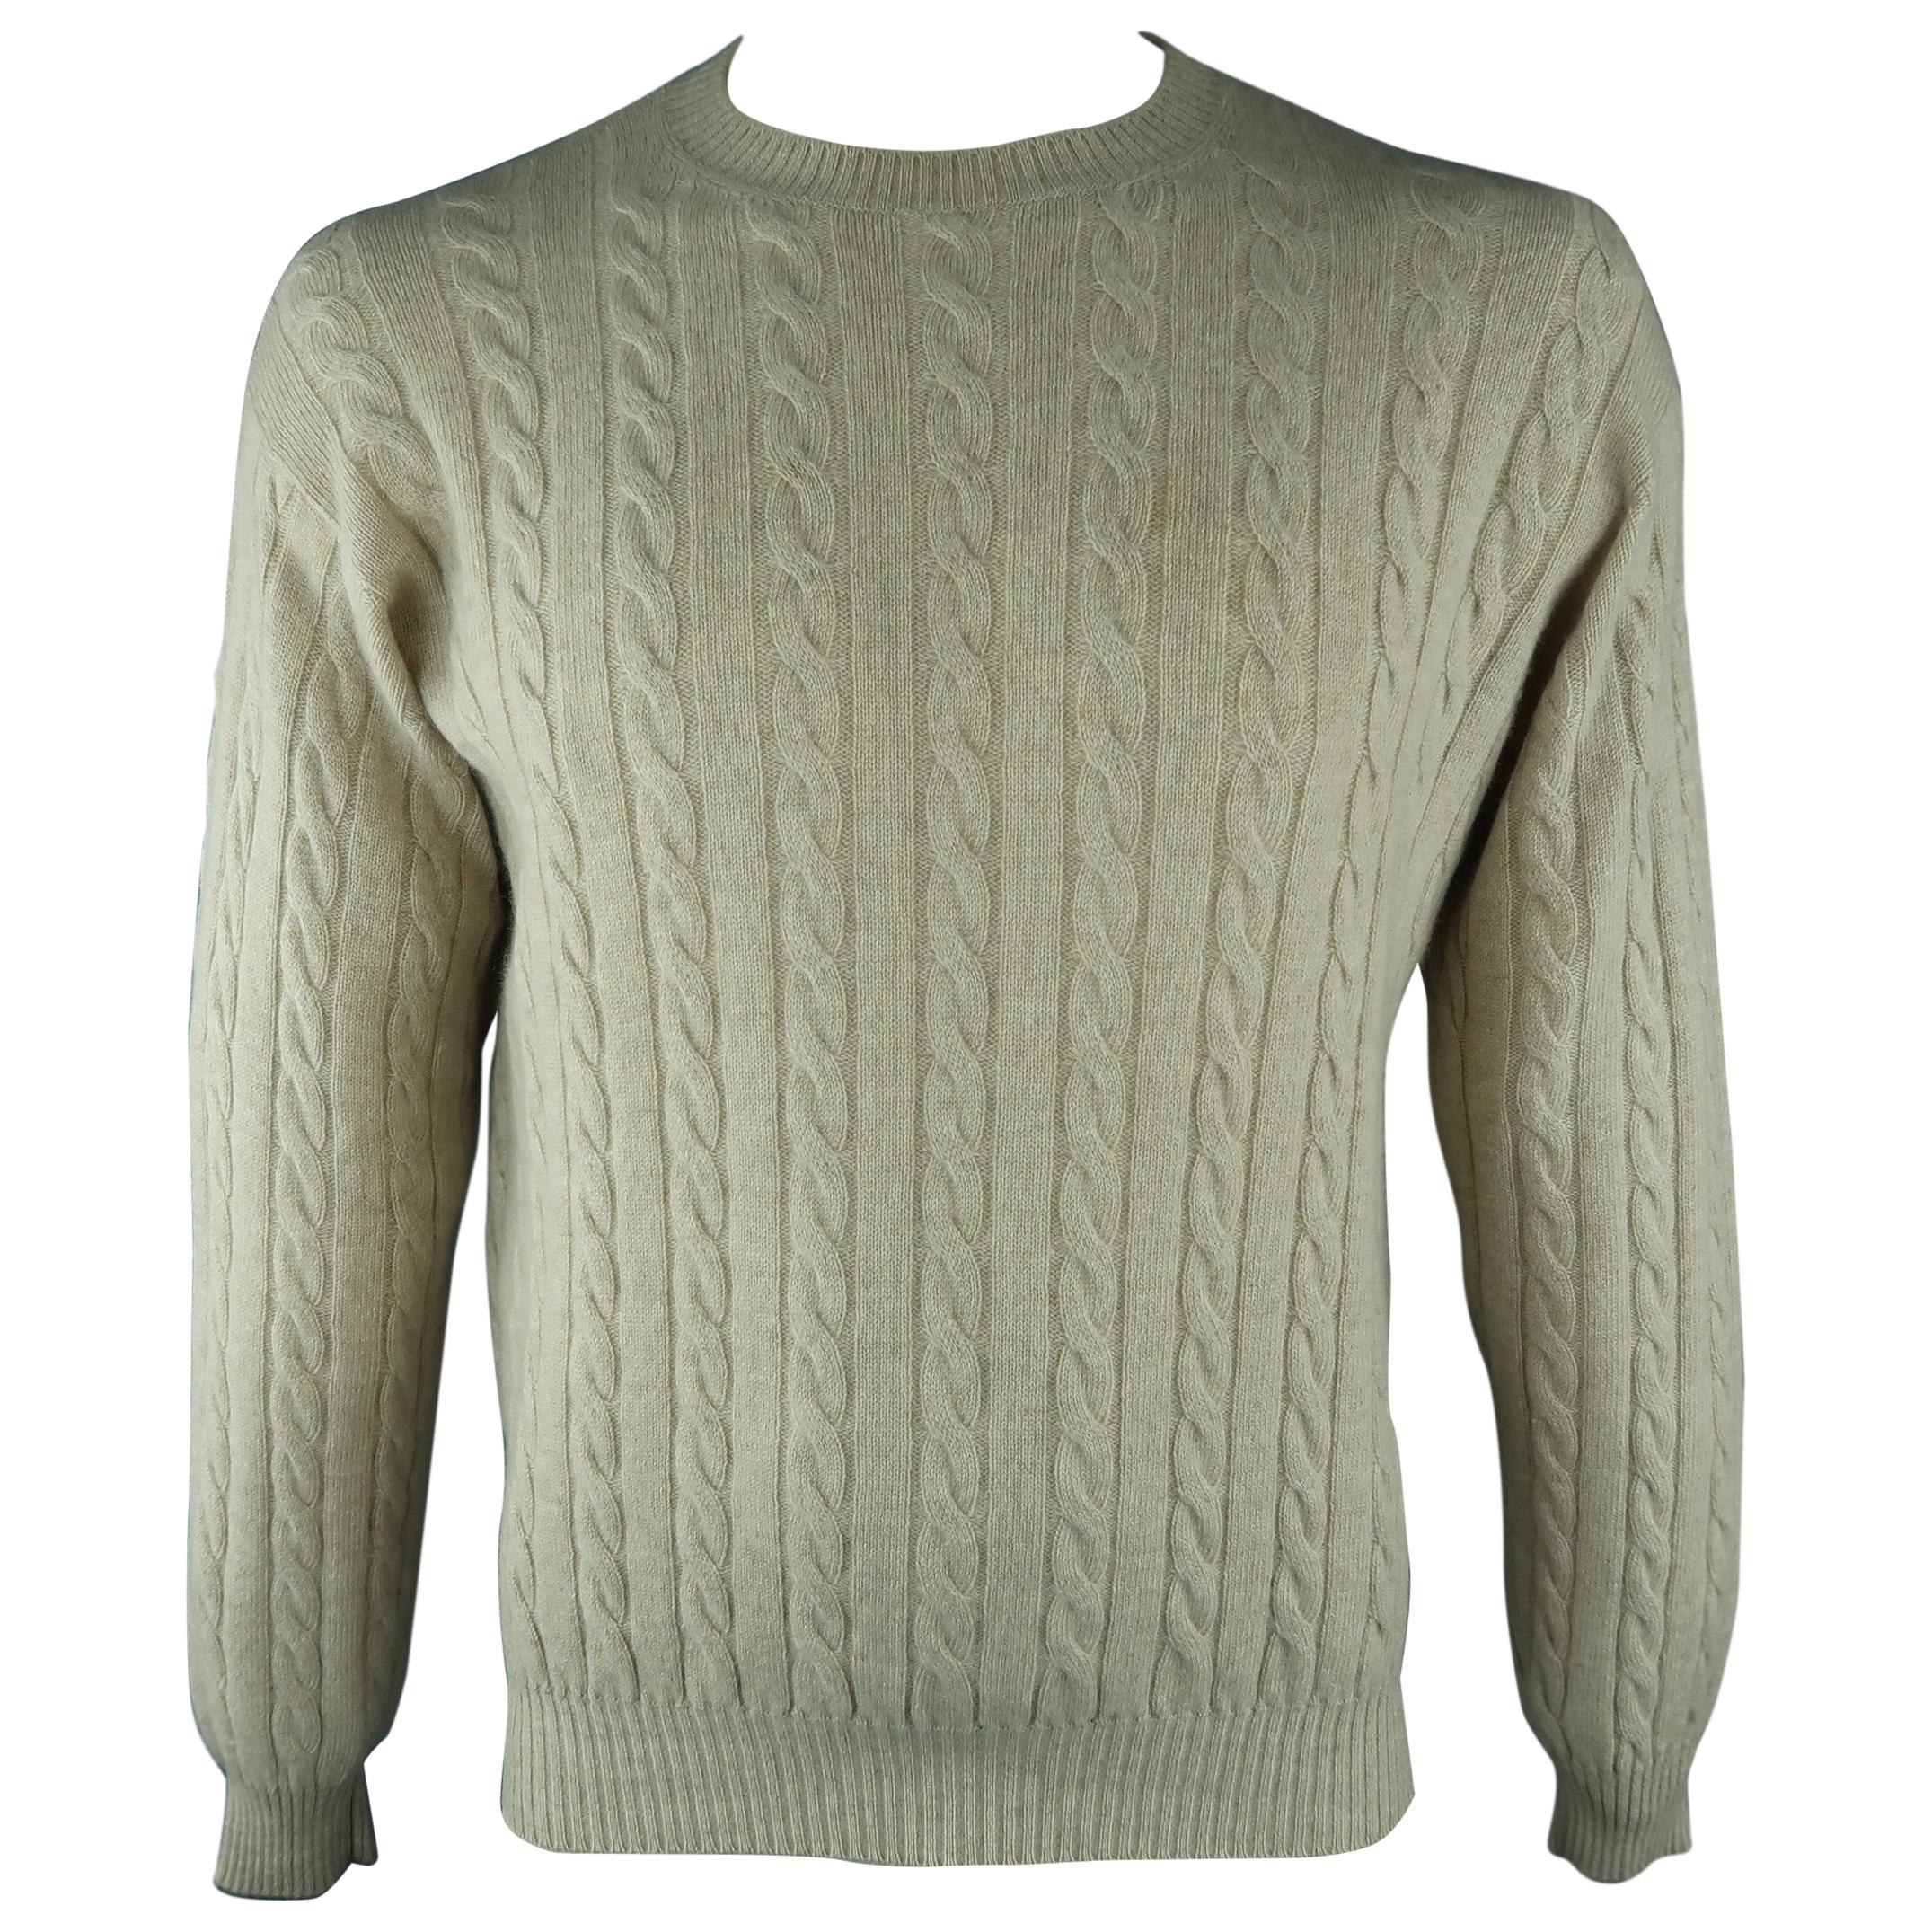 LORO PIANA Size 40 Khaki Cable Knit Cashmere Sweater